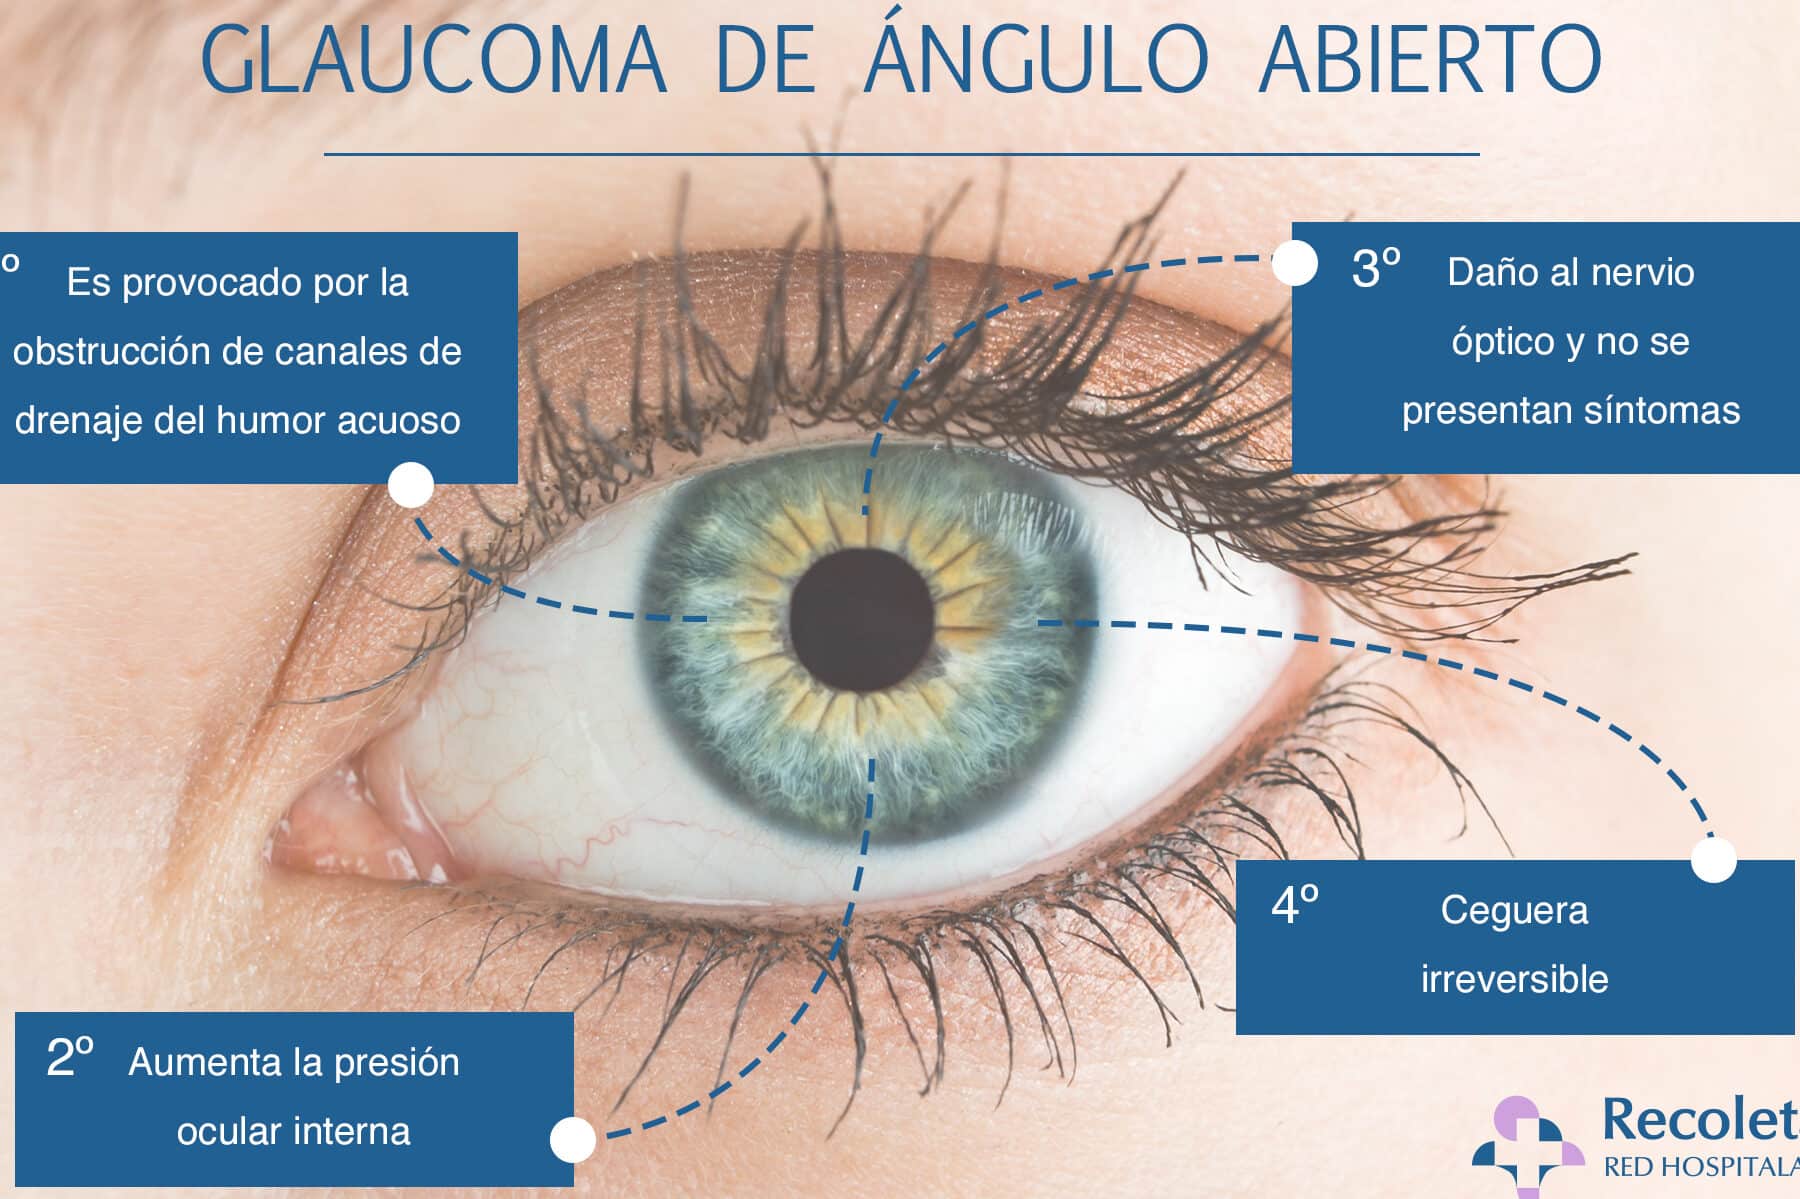 dia mundial del glaucoma 12 de marzo